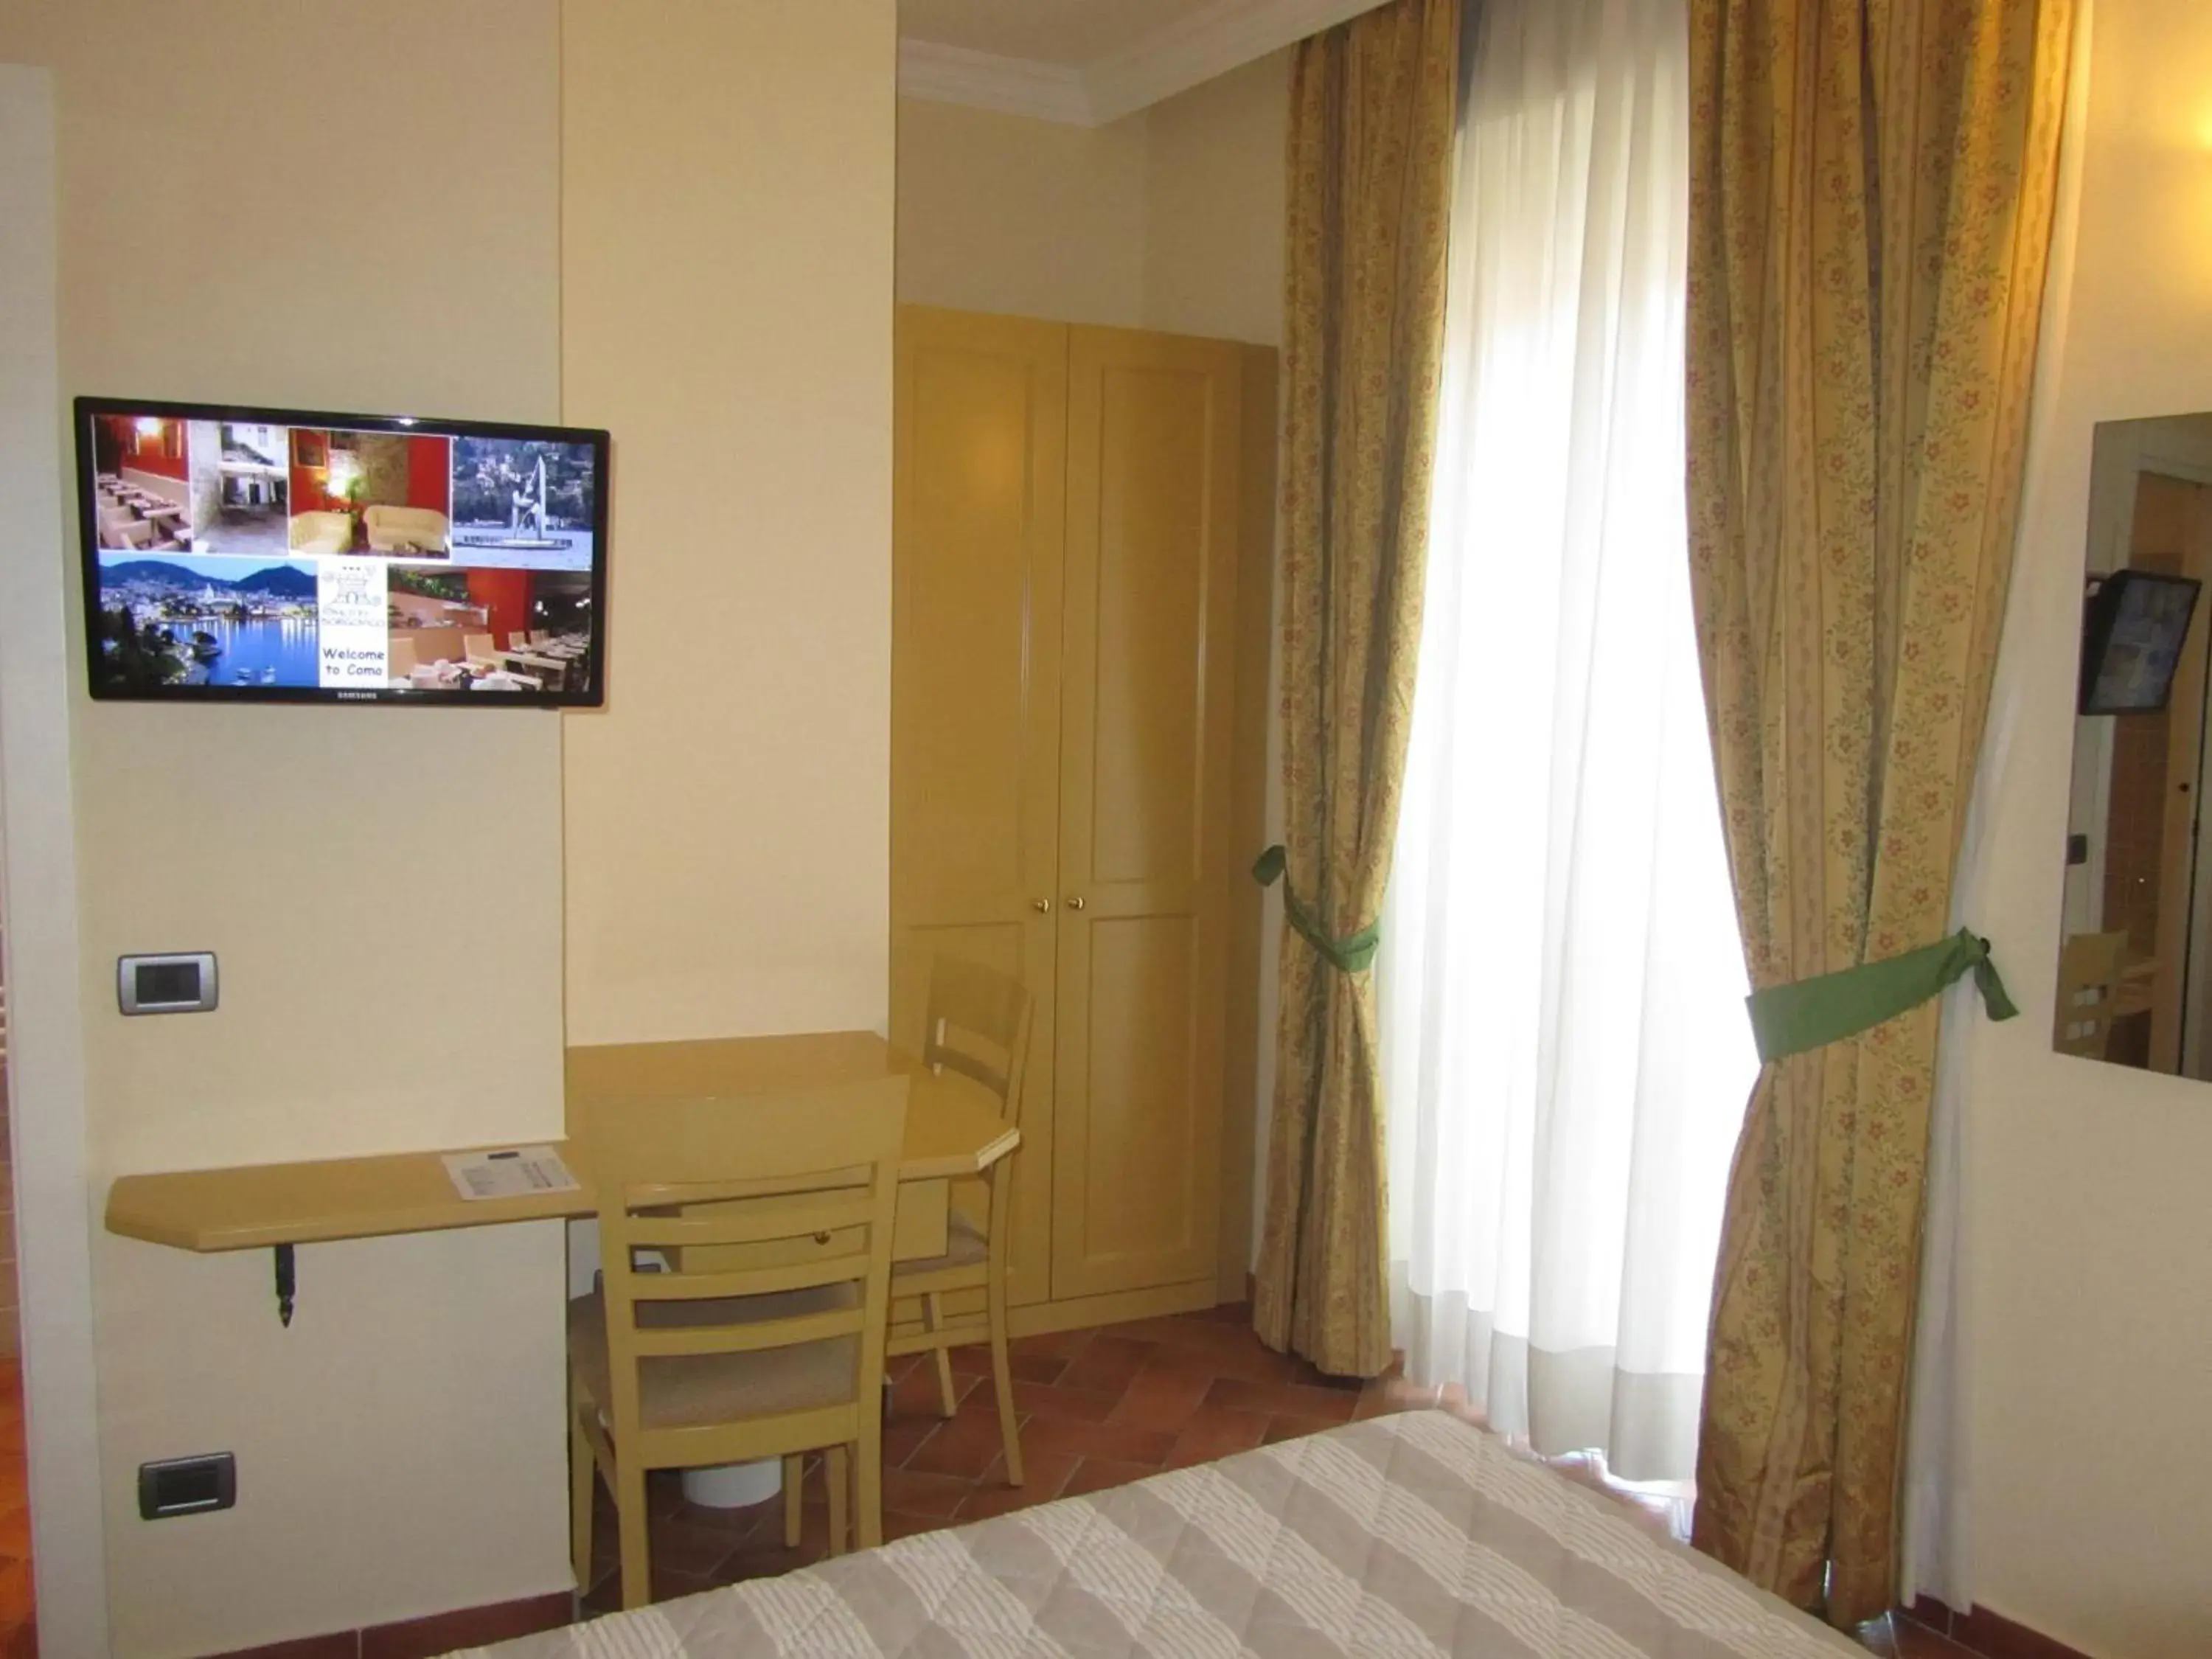 Bedroom, TV/Entertainment Center in Hotel Borgovico